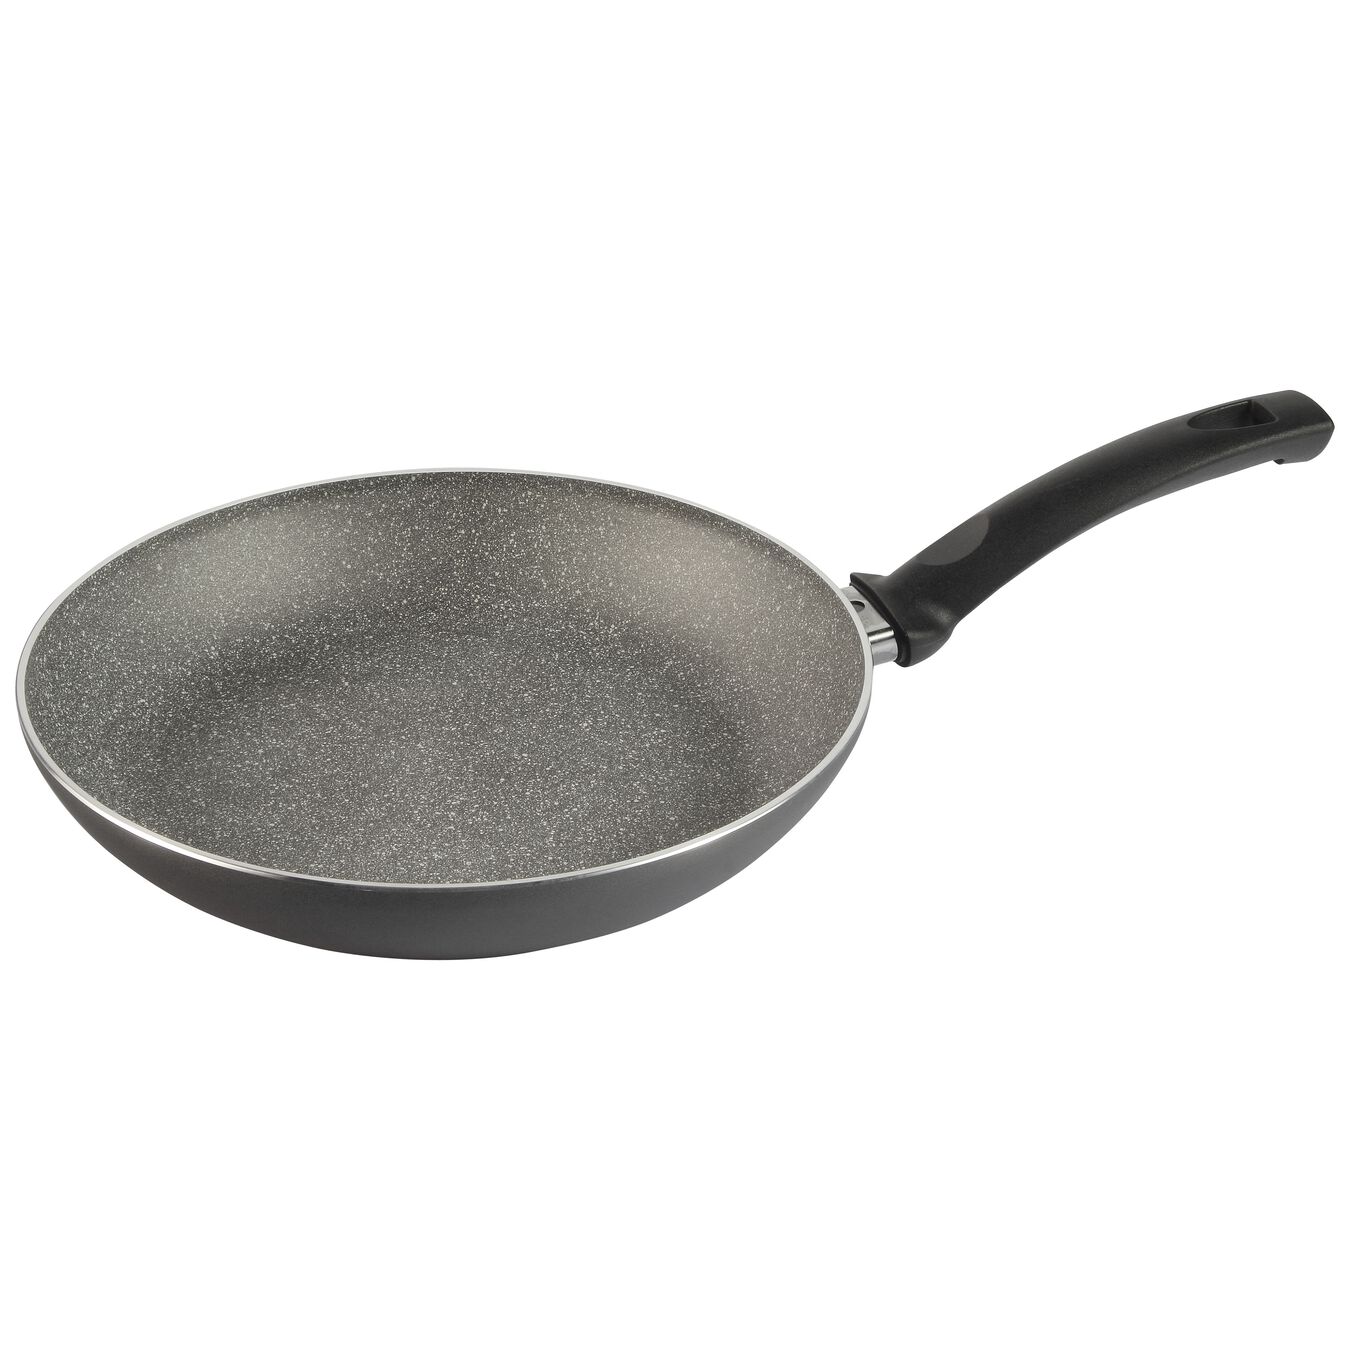 24 cm Aluminium Frying pan,,large 2